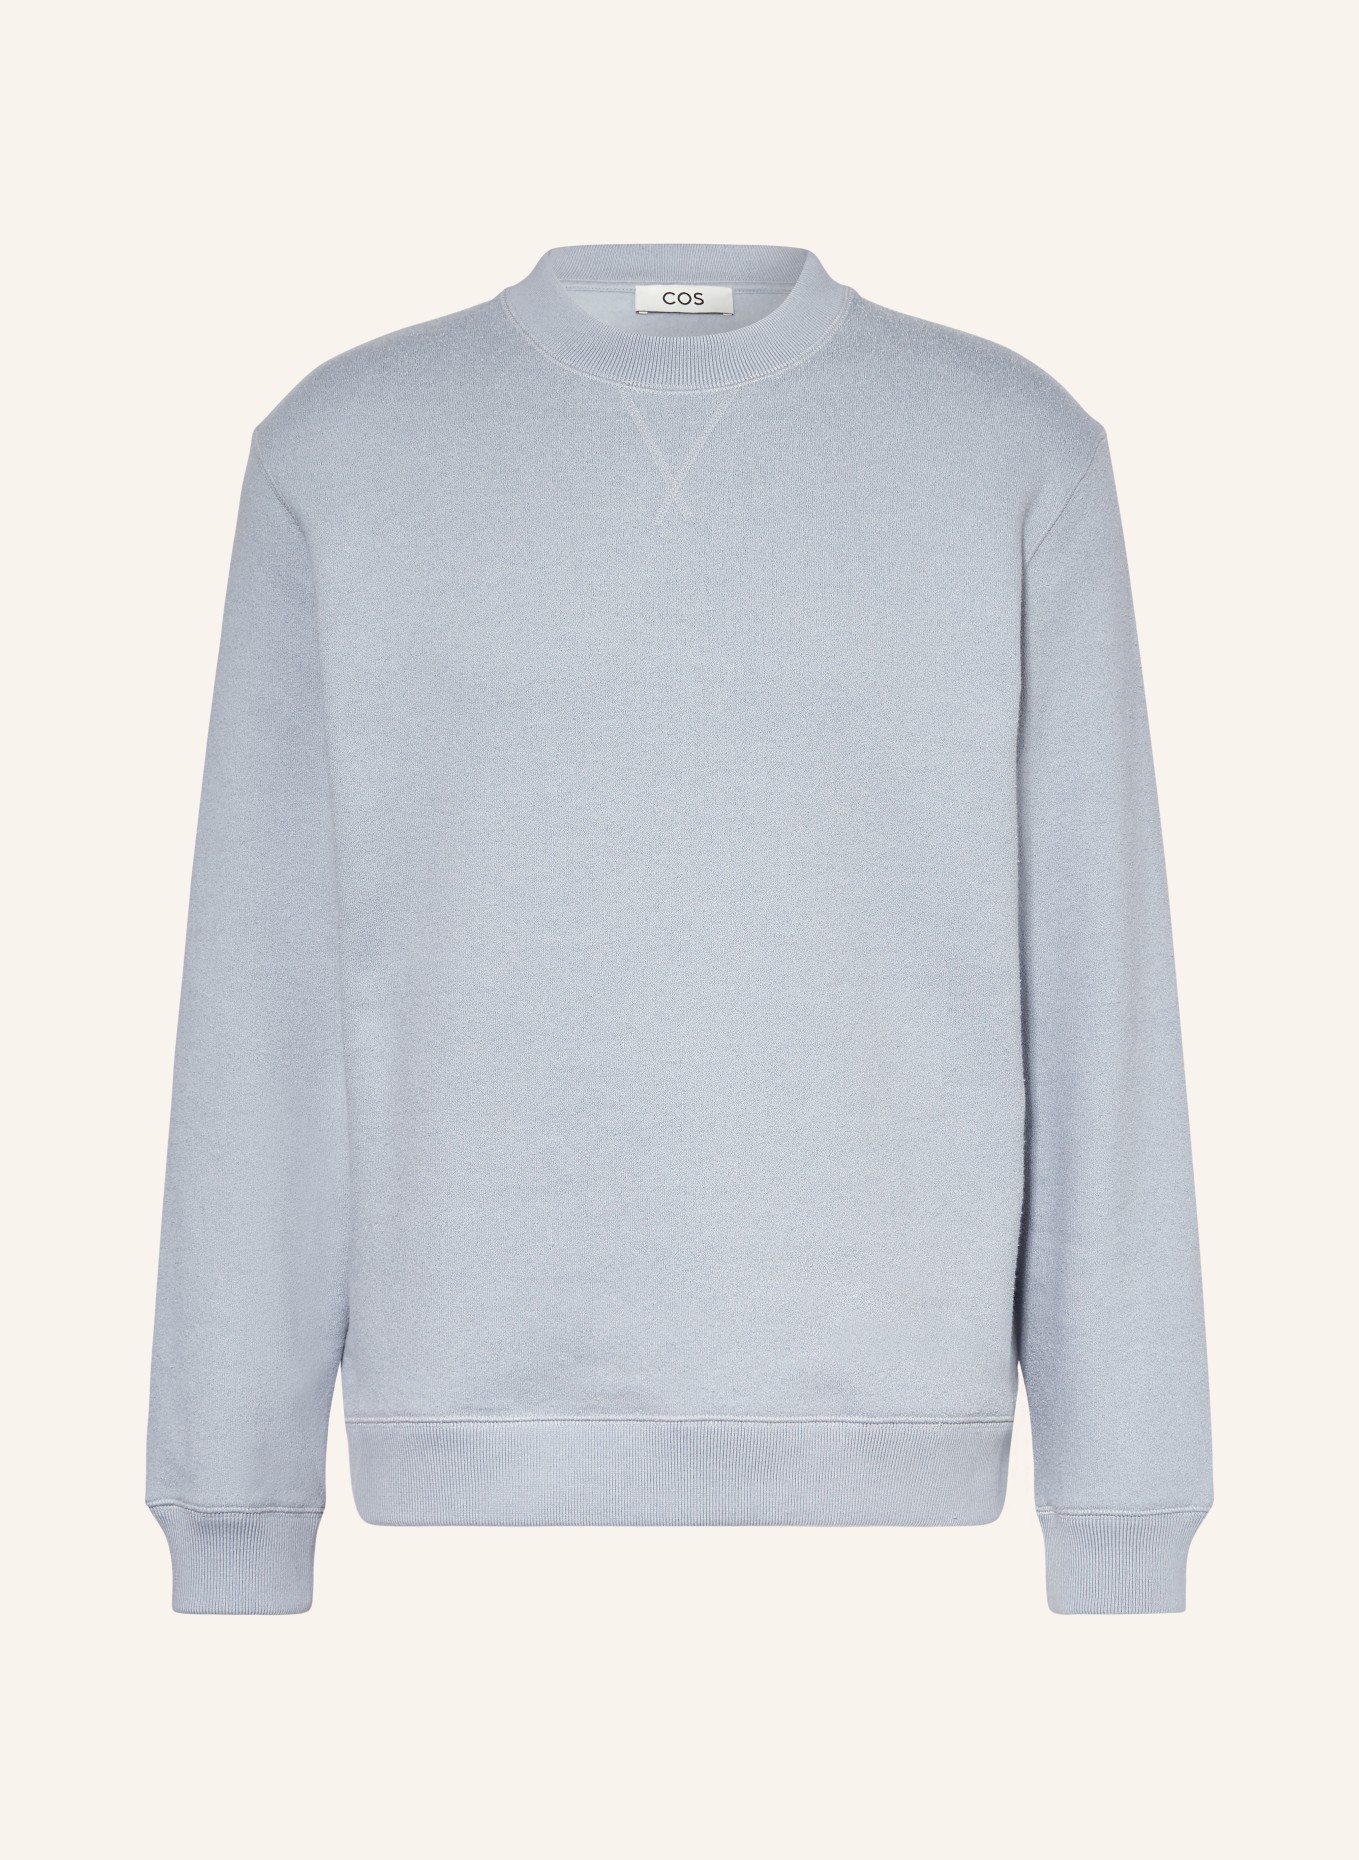 COS Sweatshirt, Color: BLUE GRAY (Image 1)